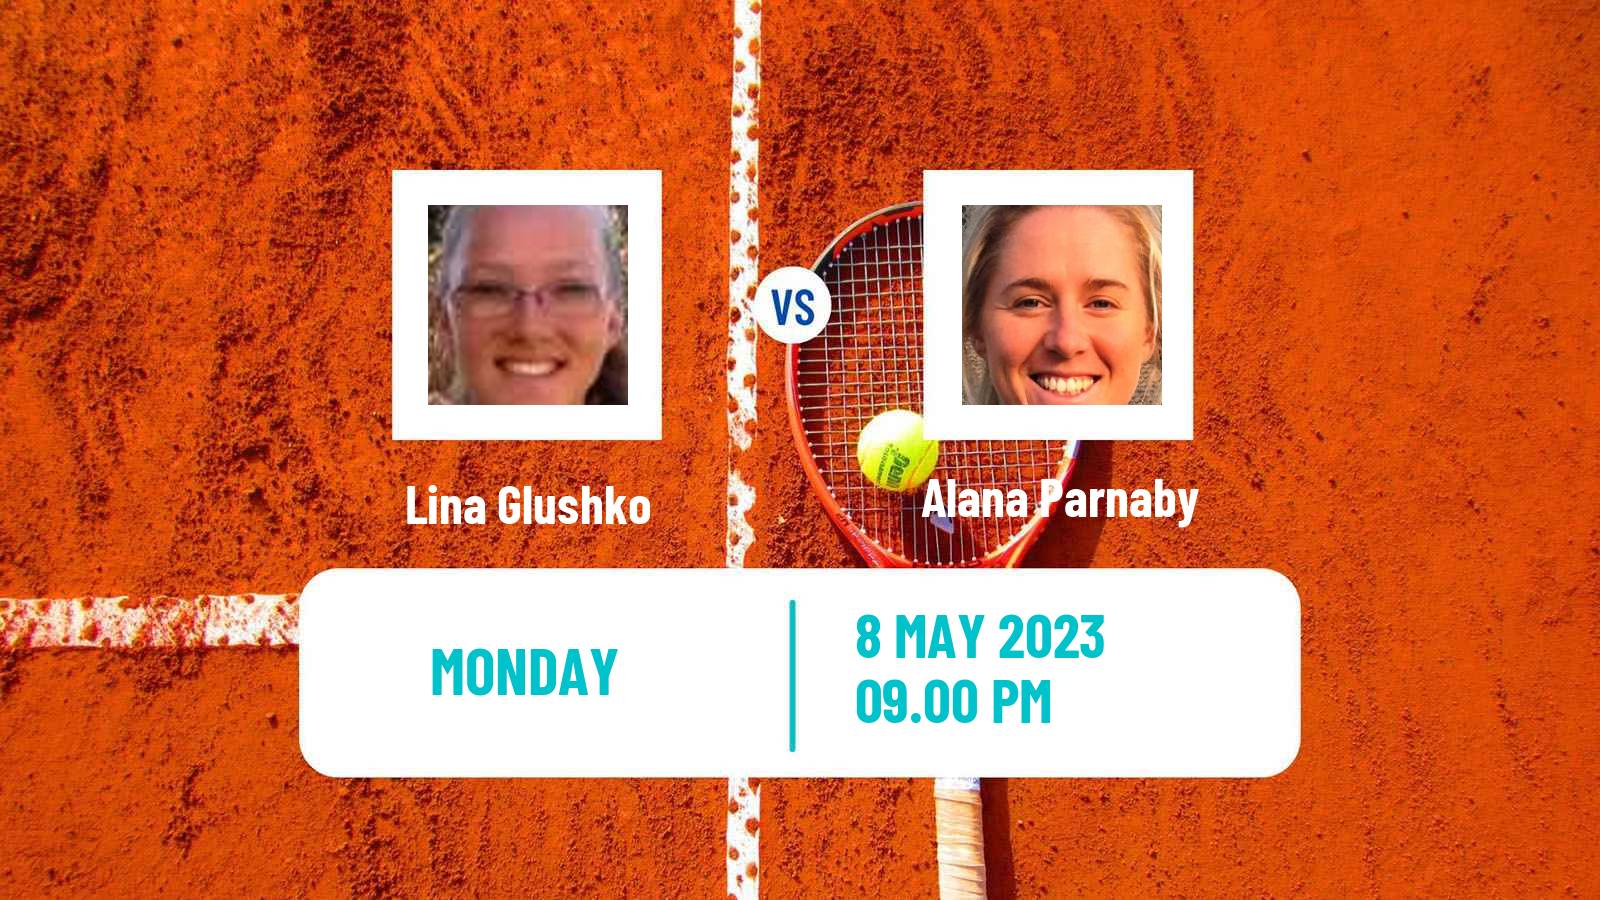 Tennis ITF Tournaments Lina Glushko - Alana Parnaby